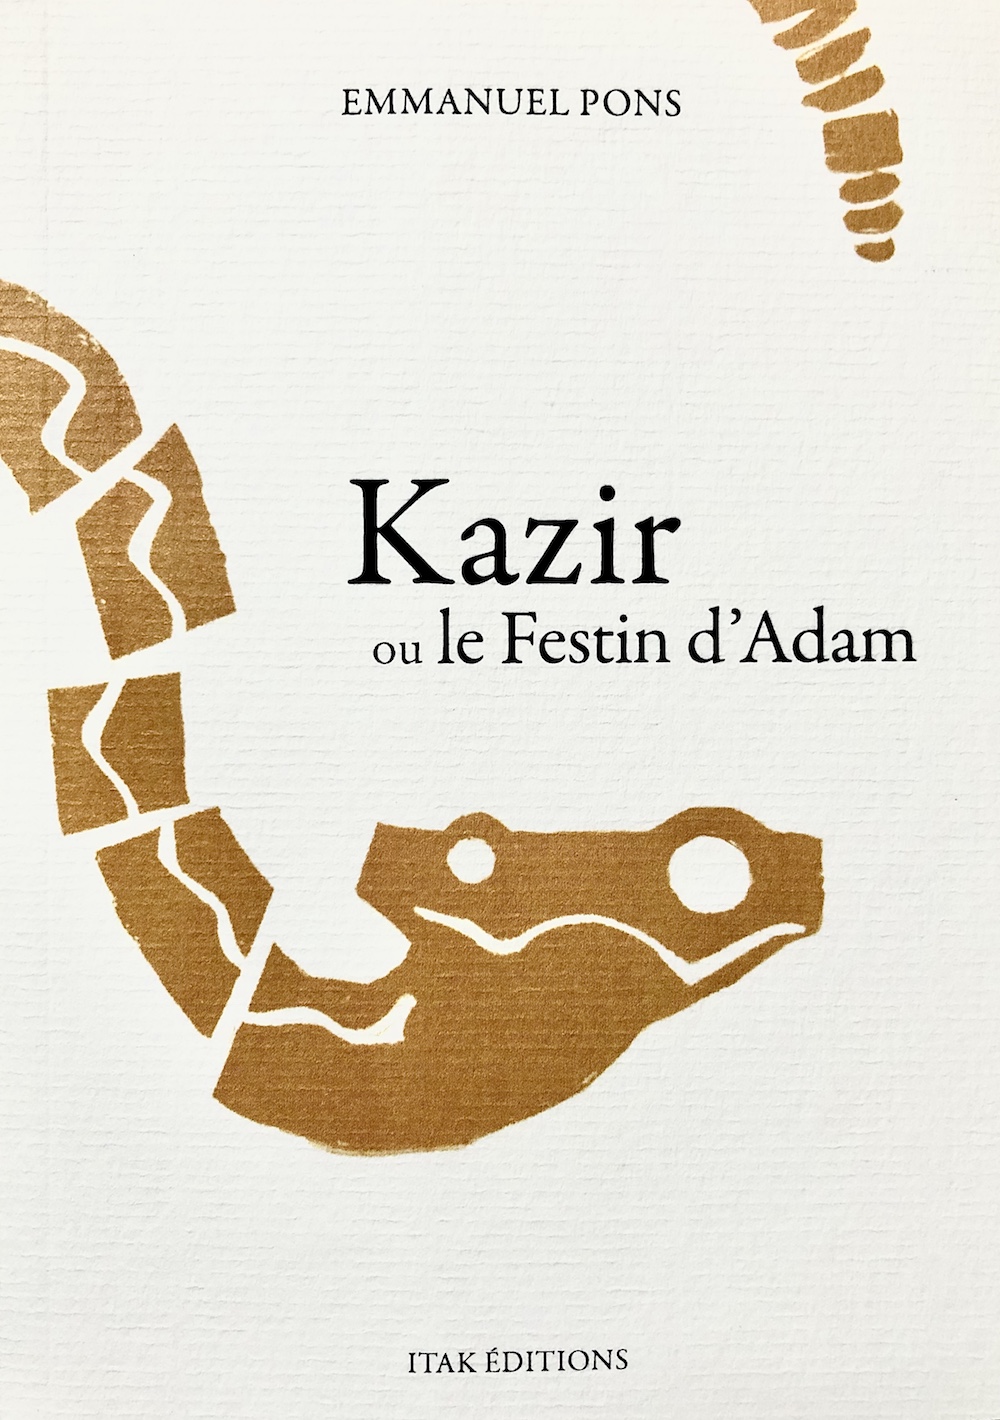 Kazir ou le festin d'Adam